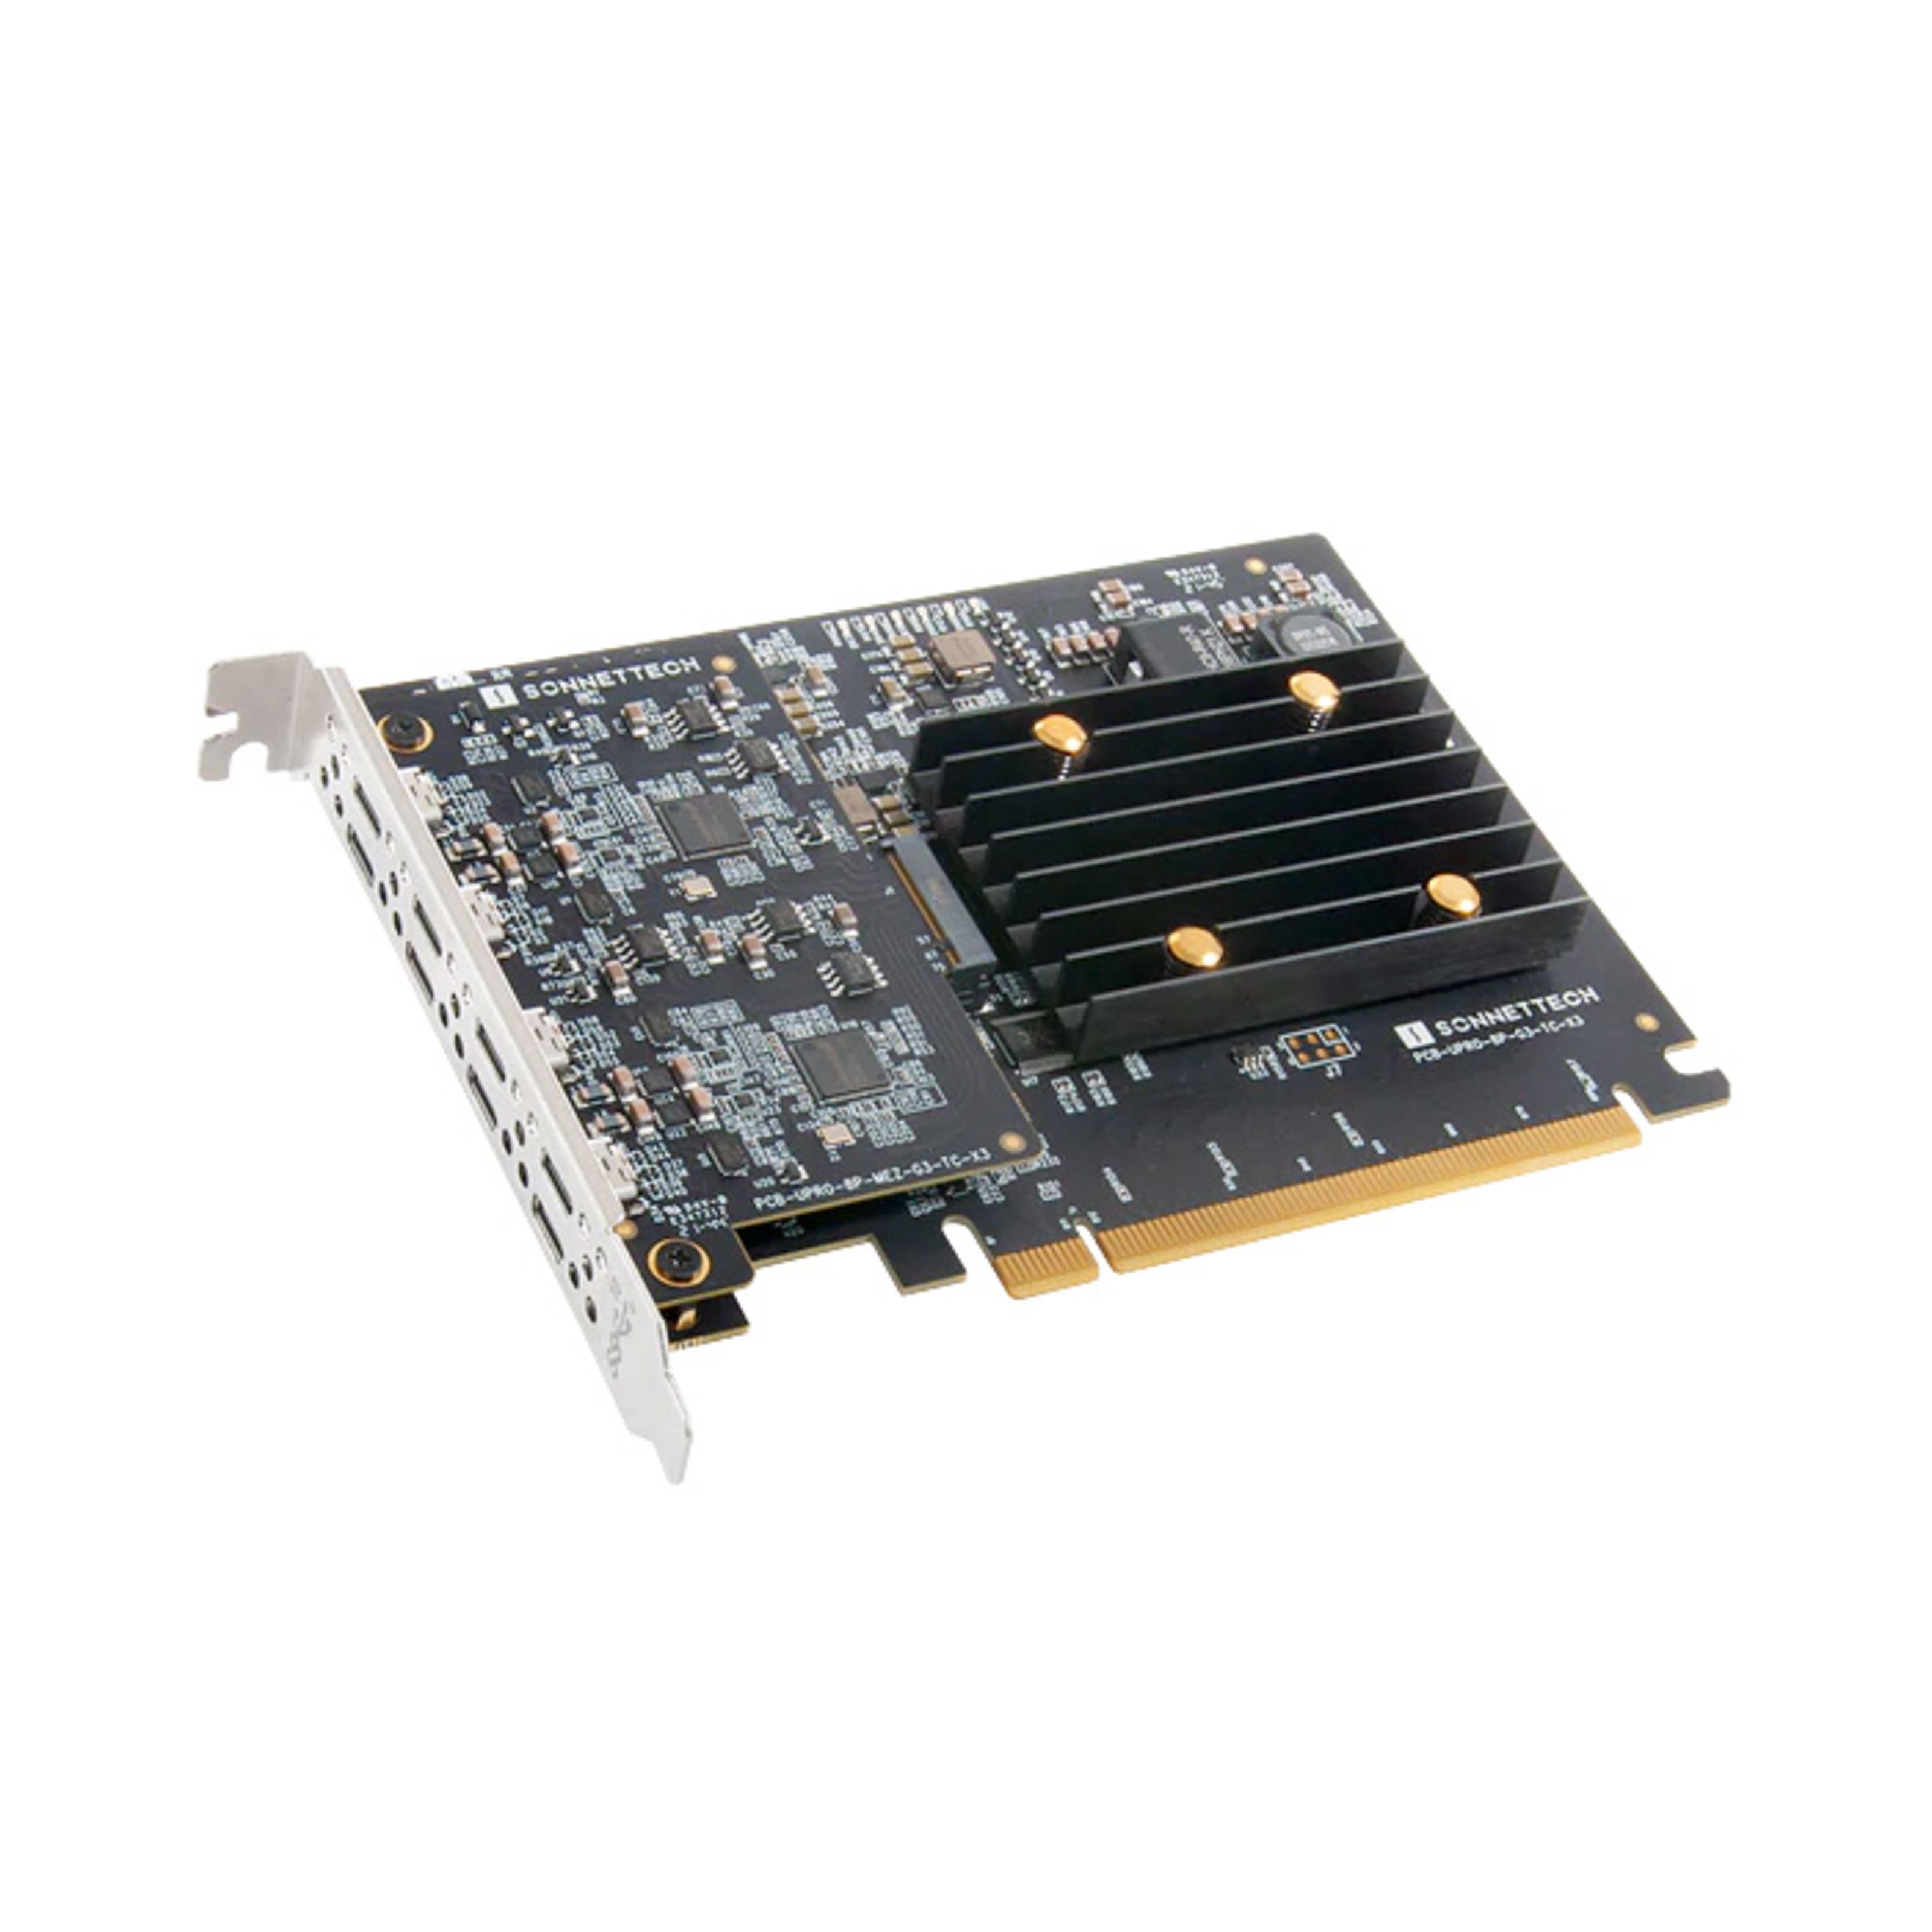 Sonnet Allegro Pro USB-C 8-port PCIe Card [Thunderbolt compatible] - PCIe Soundkarte